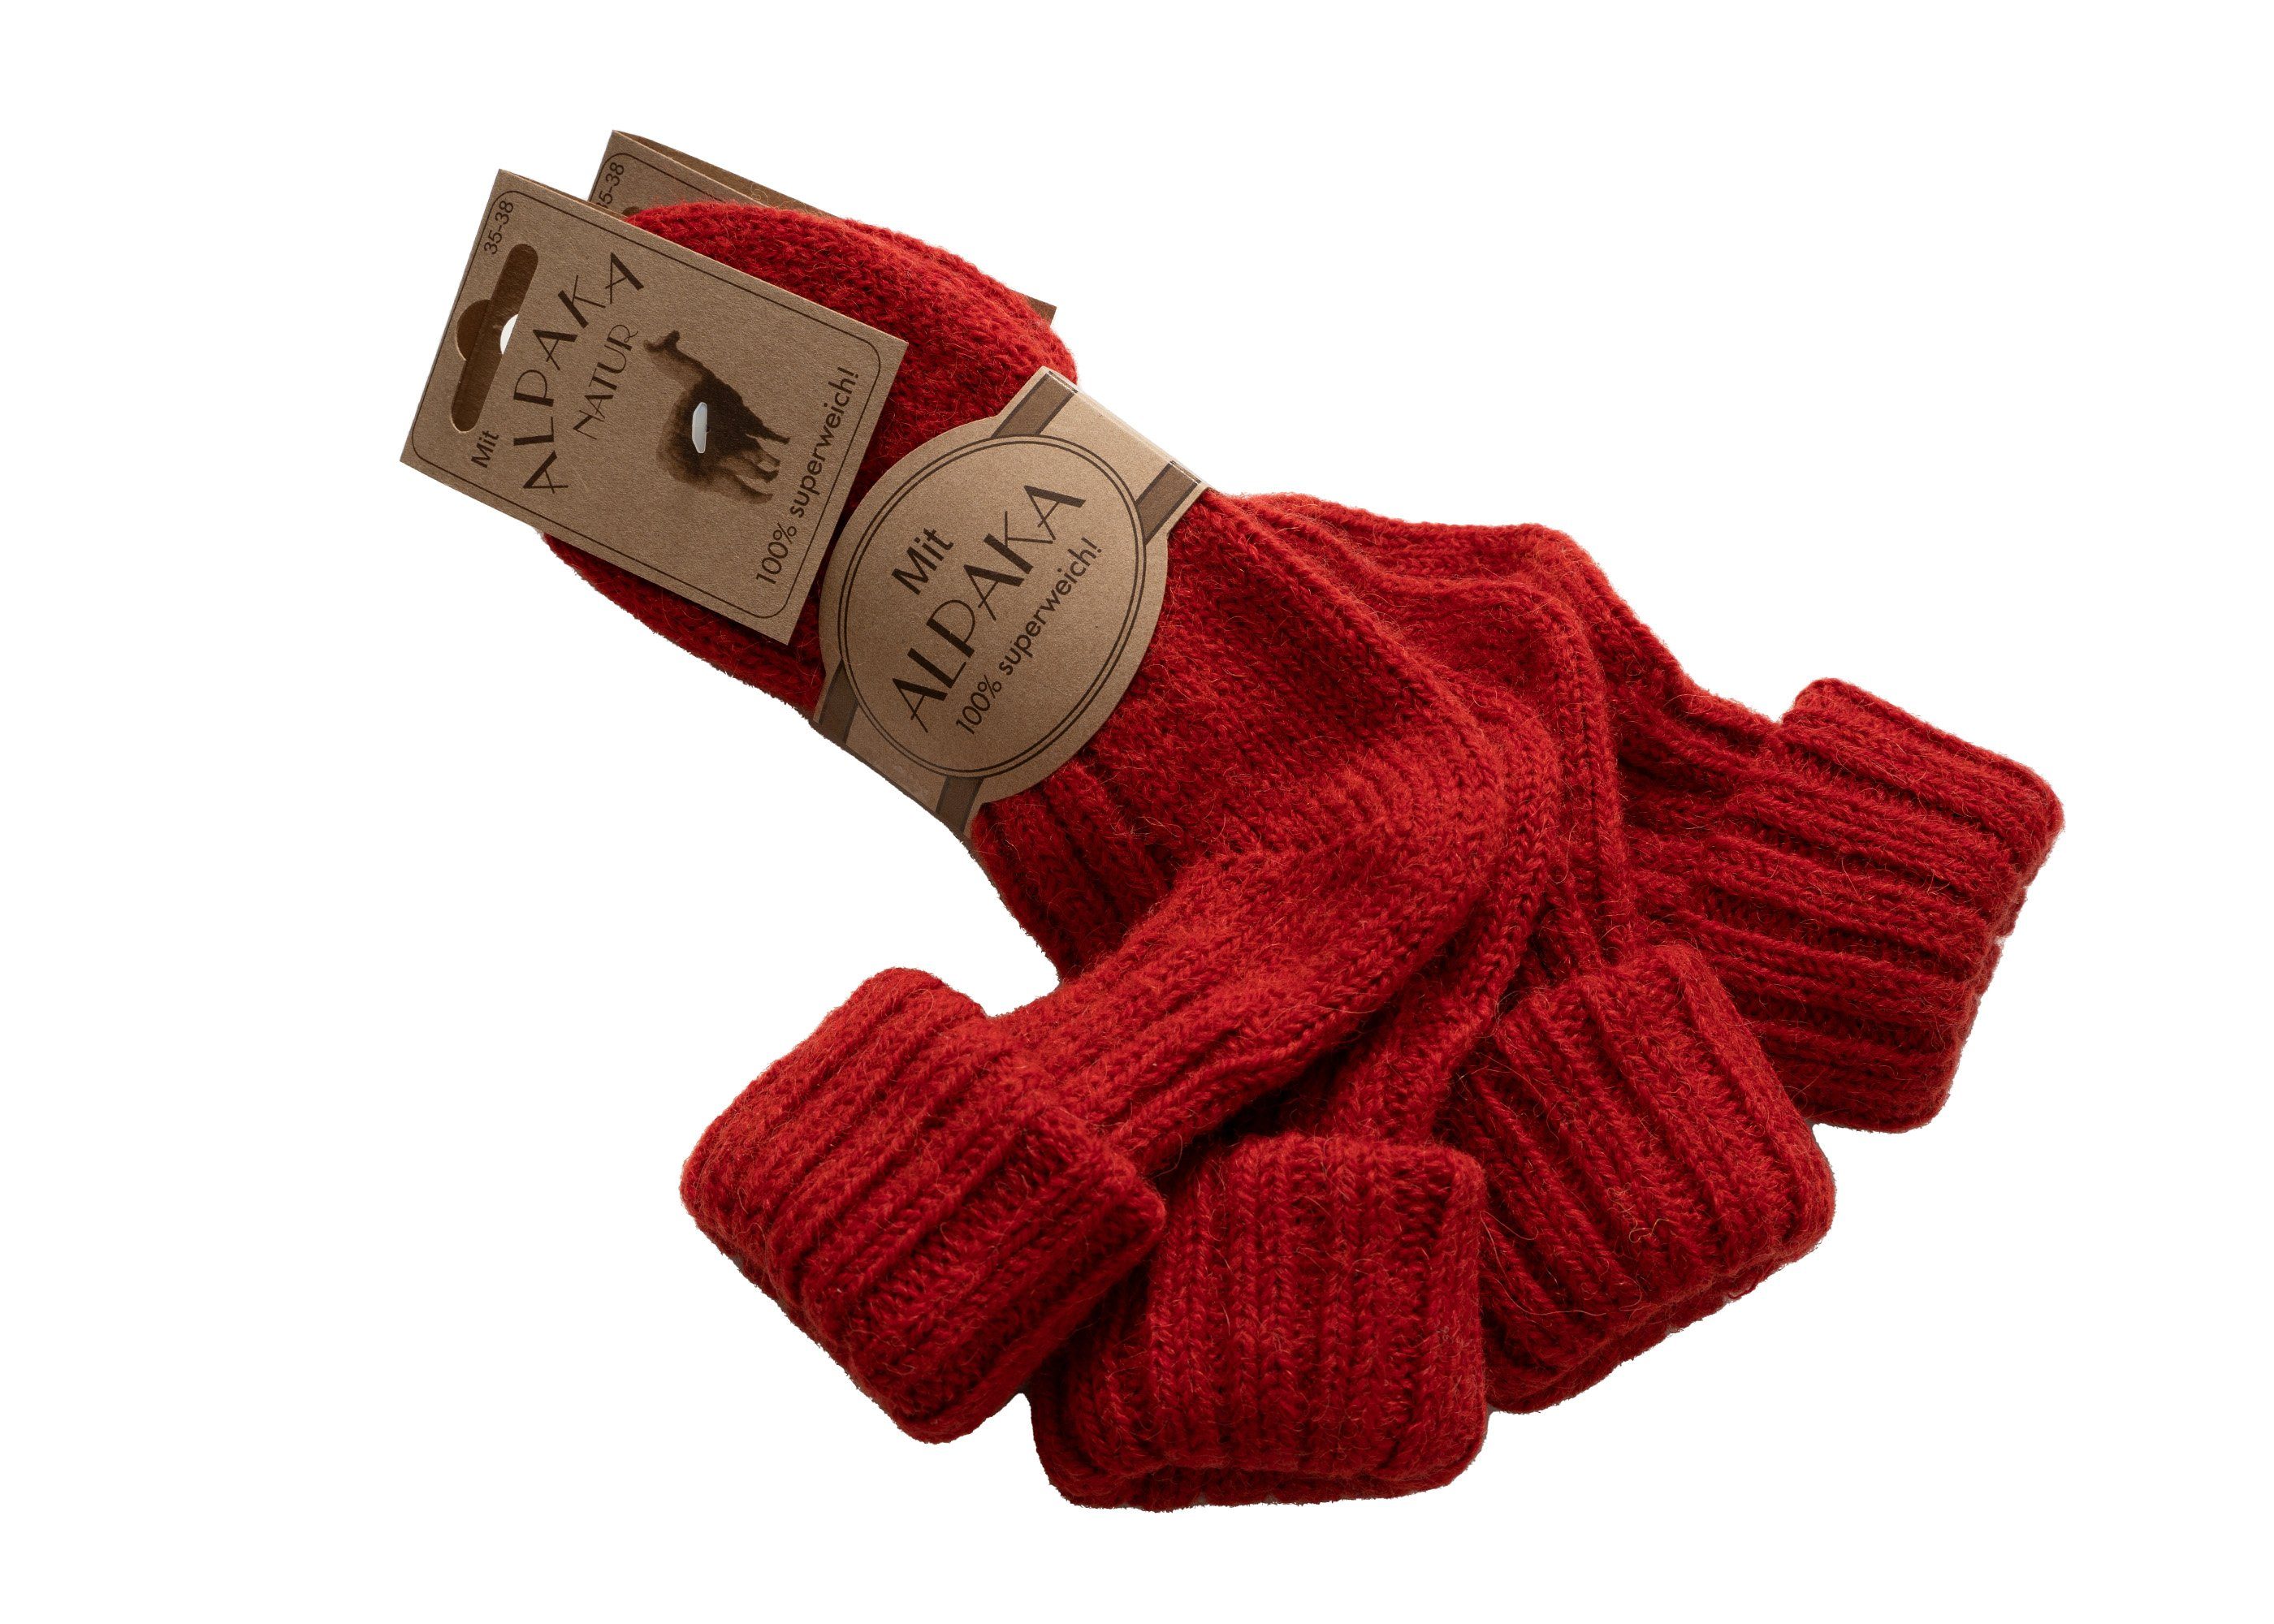 Umschlag Alpakawolle mit mit 40% Socken Strapazierfähige warme mit HomeOfSocks Socken Alpakawolle und Wollanteil Bunte Socken Wolle und Rot und